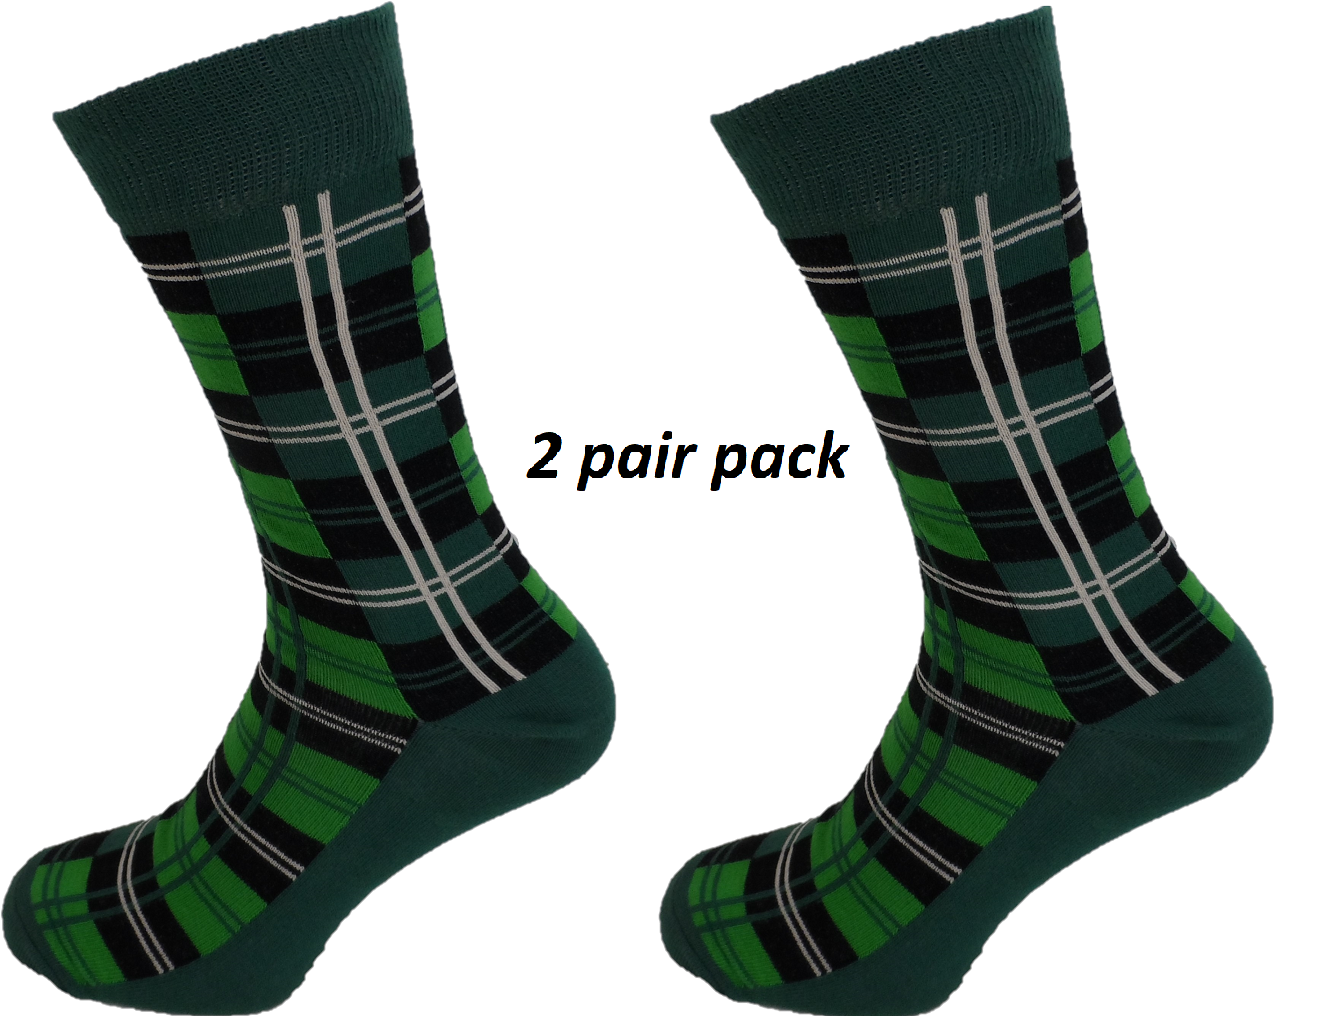 Herrensocken im 2er-Pack mit grünem Socks